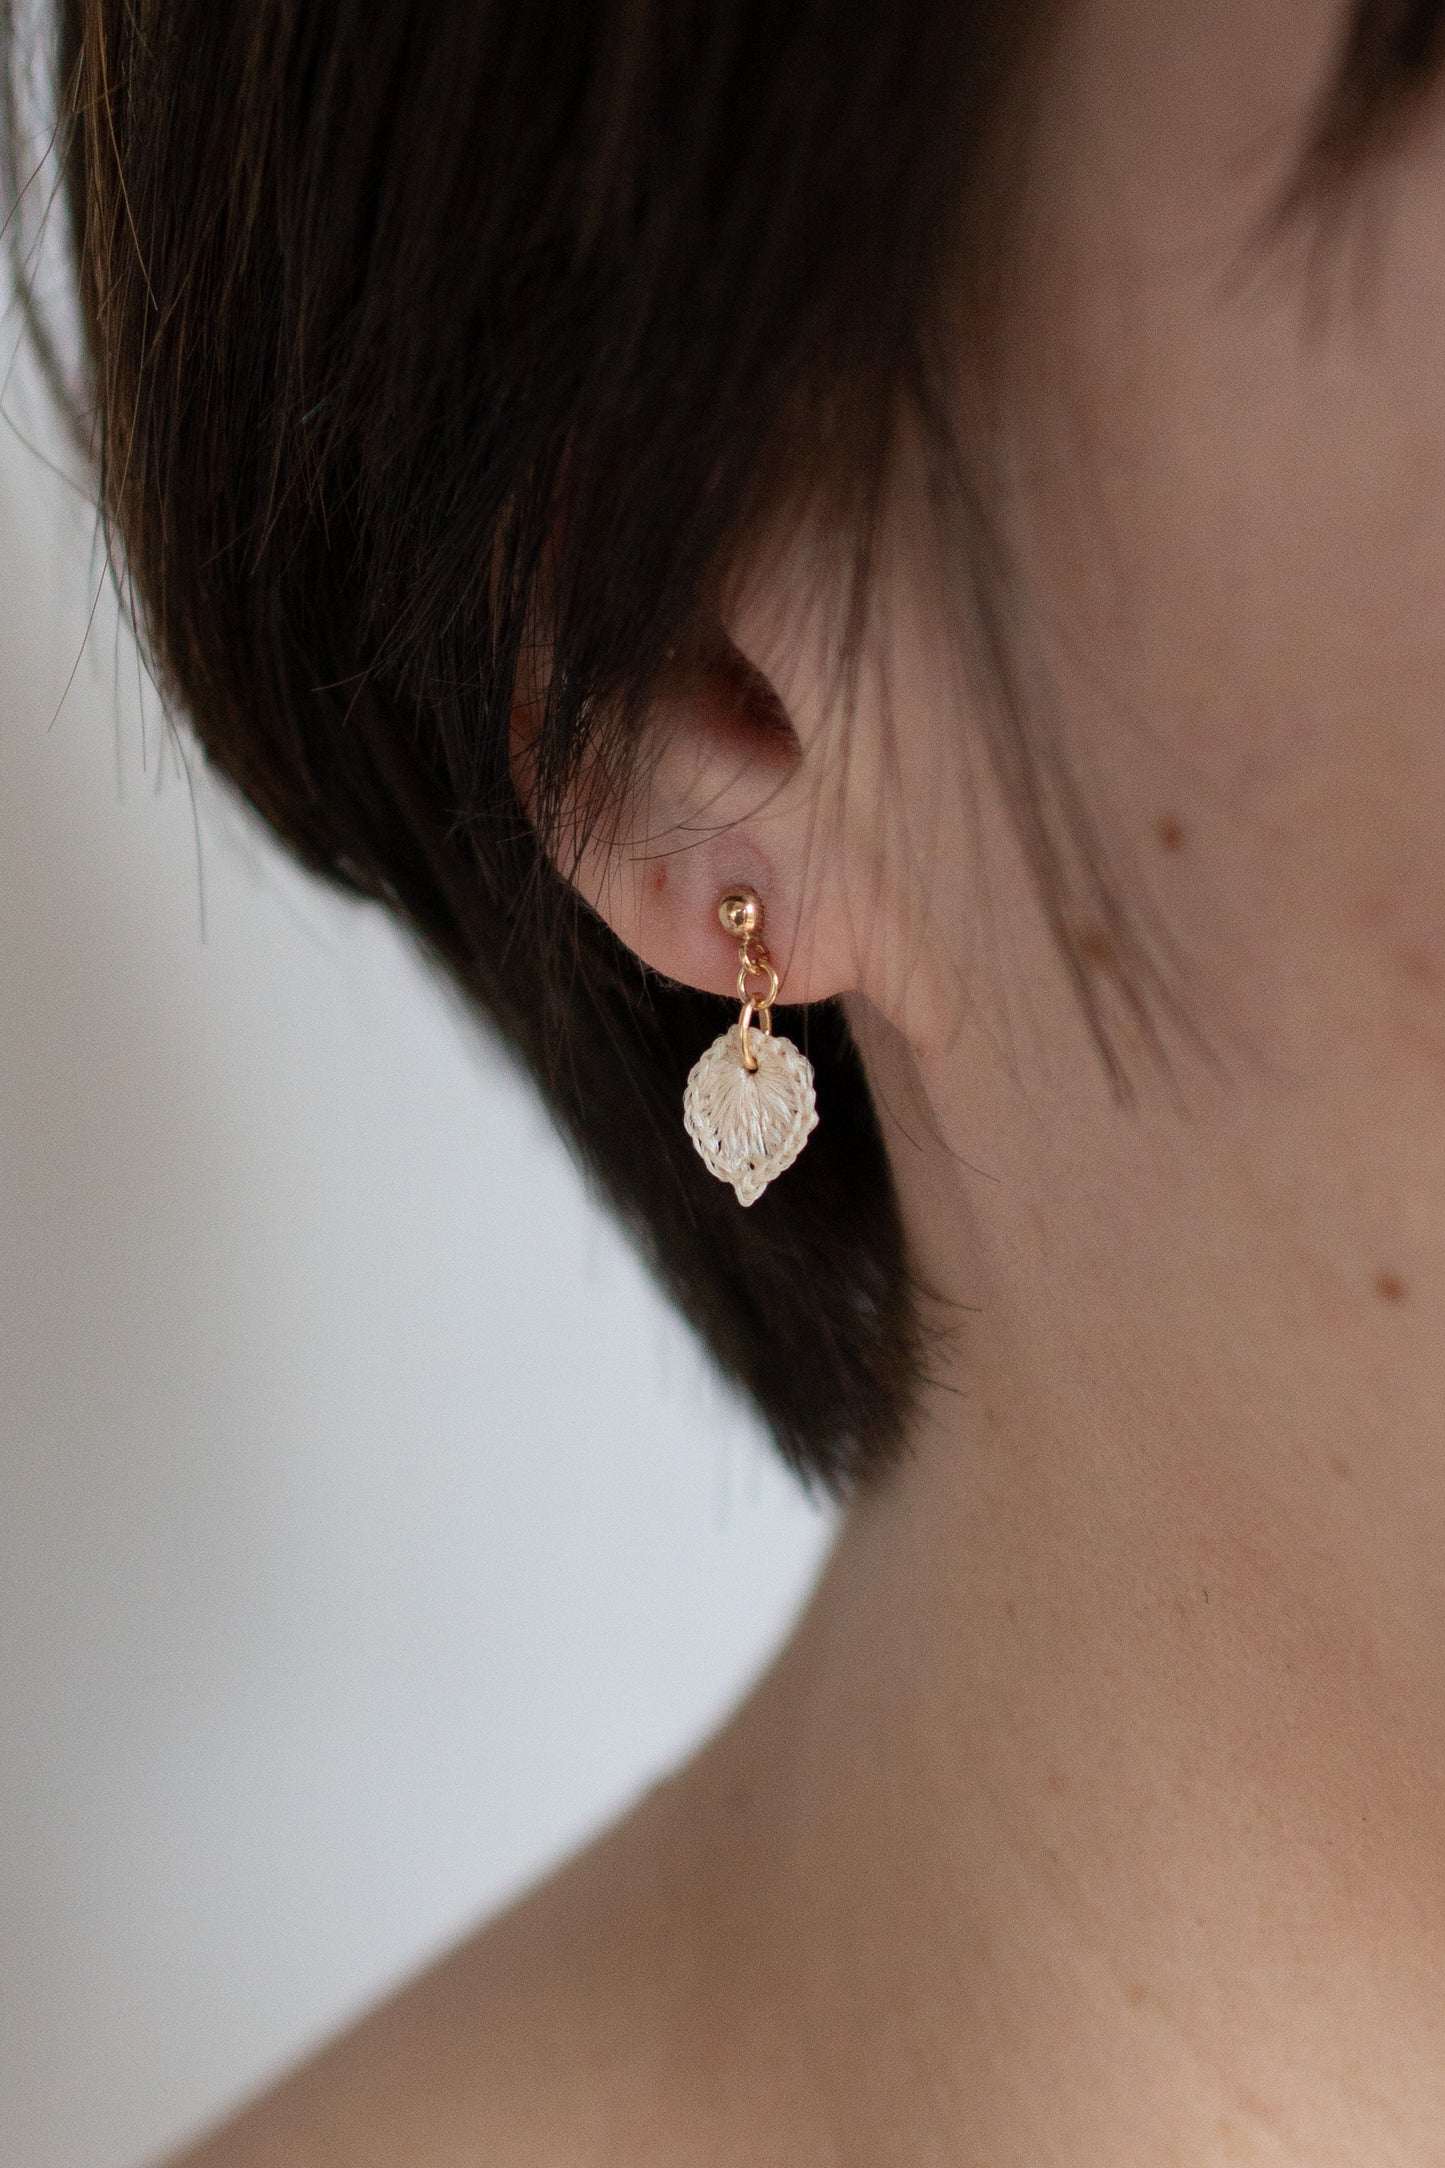 Ichiha's earring | unbleached